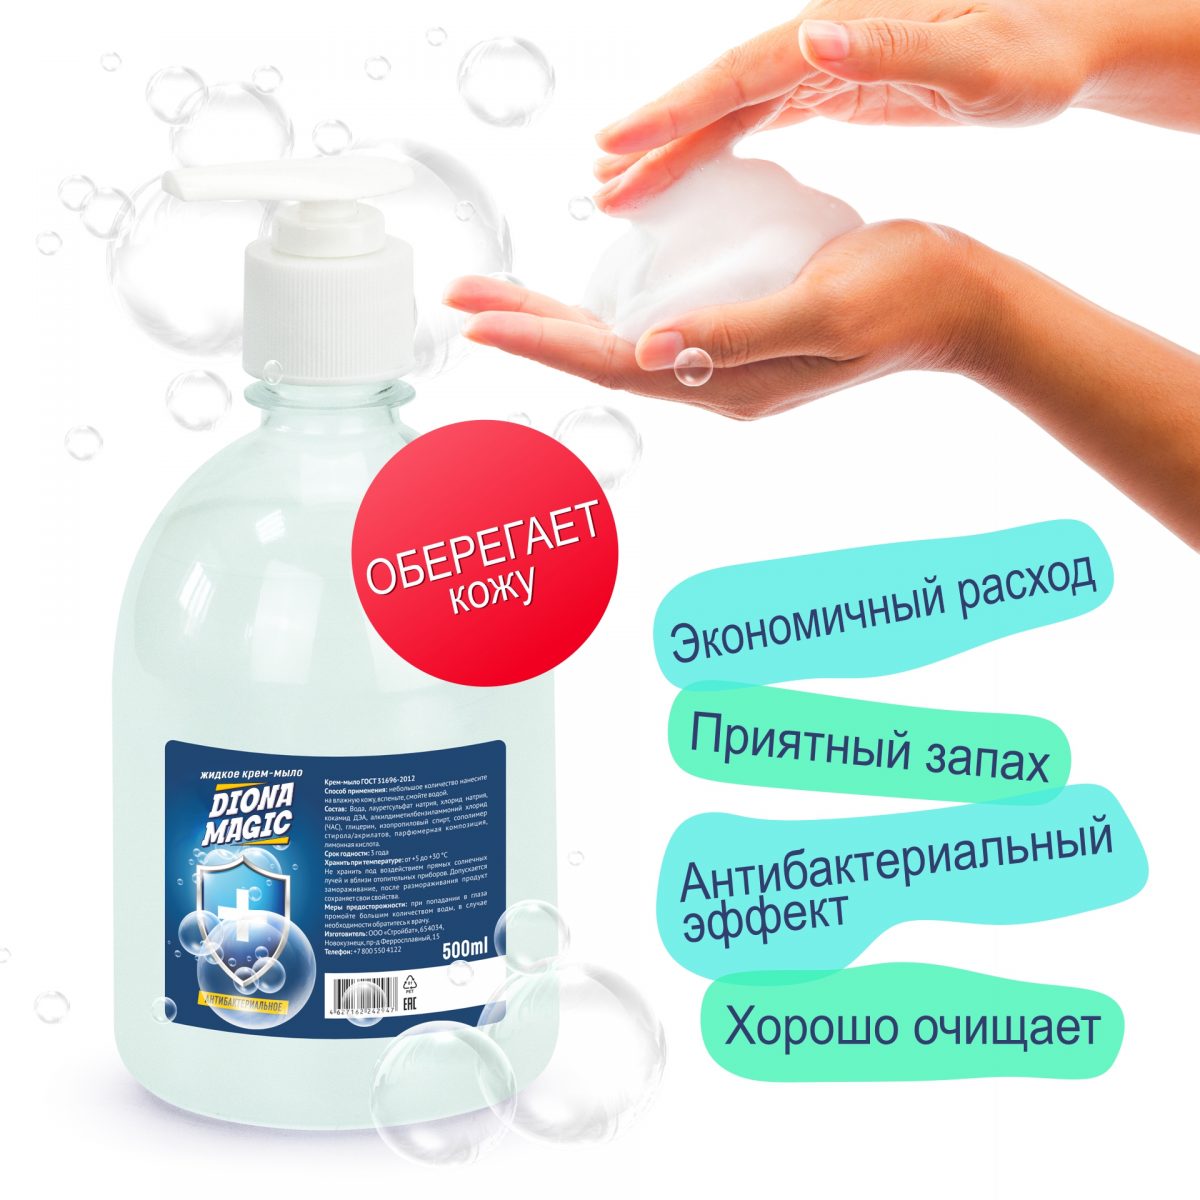 Жидкое крем-мыло DIONA MAGIC антибактериальное ПЭТ 500мл (дозатор)